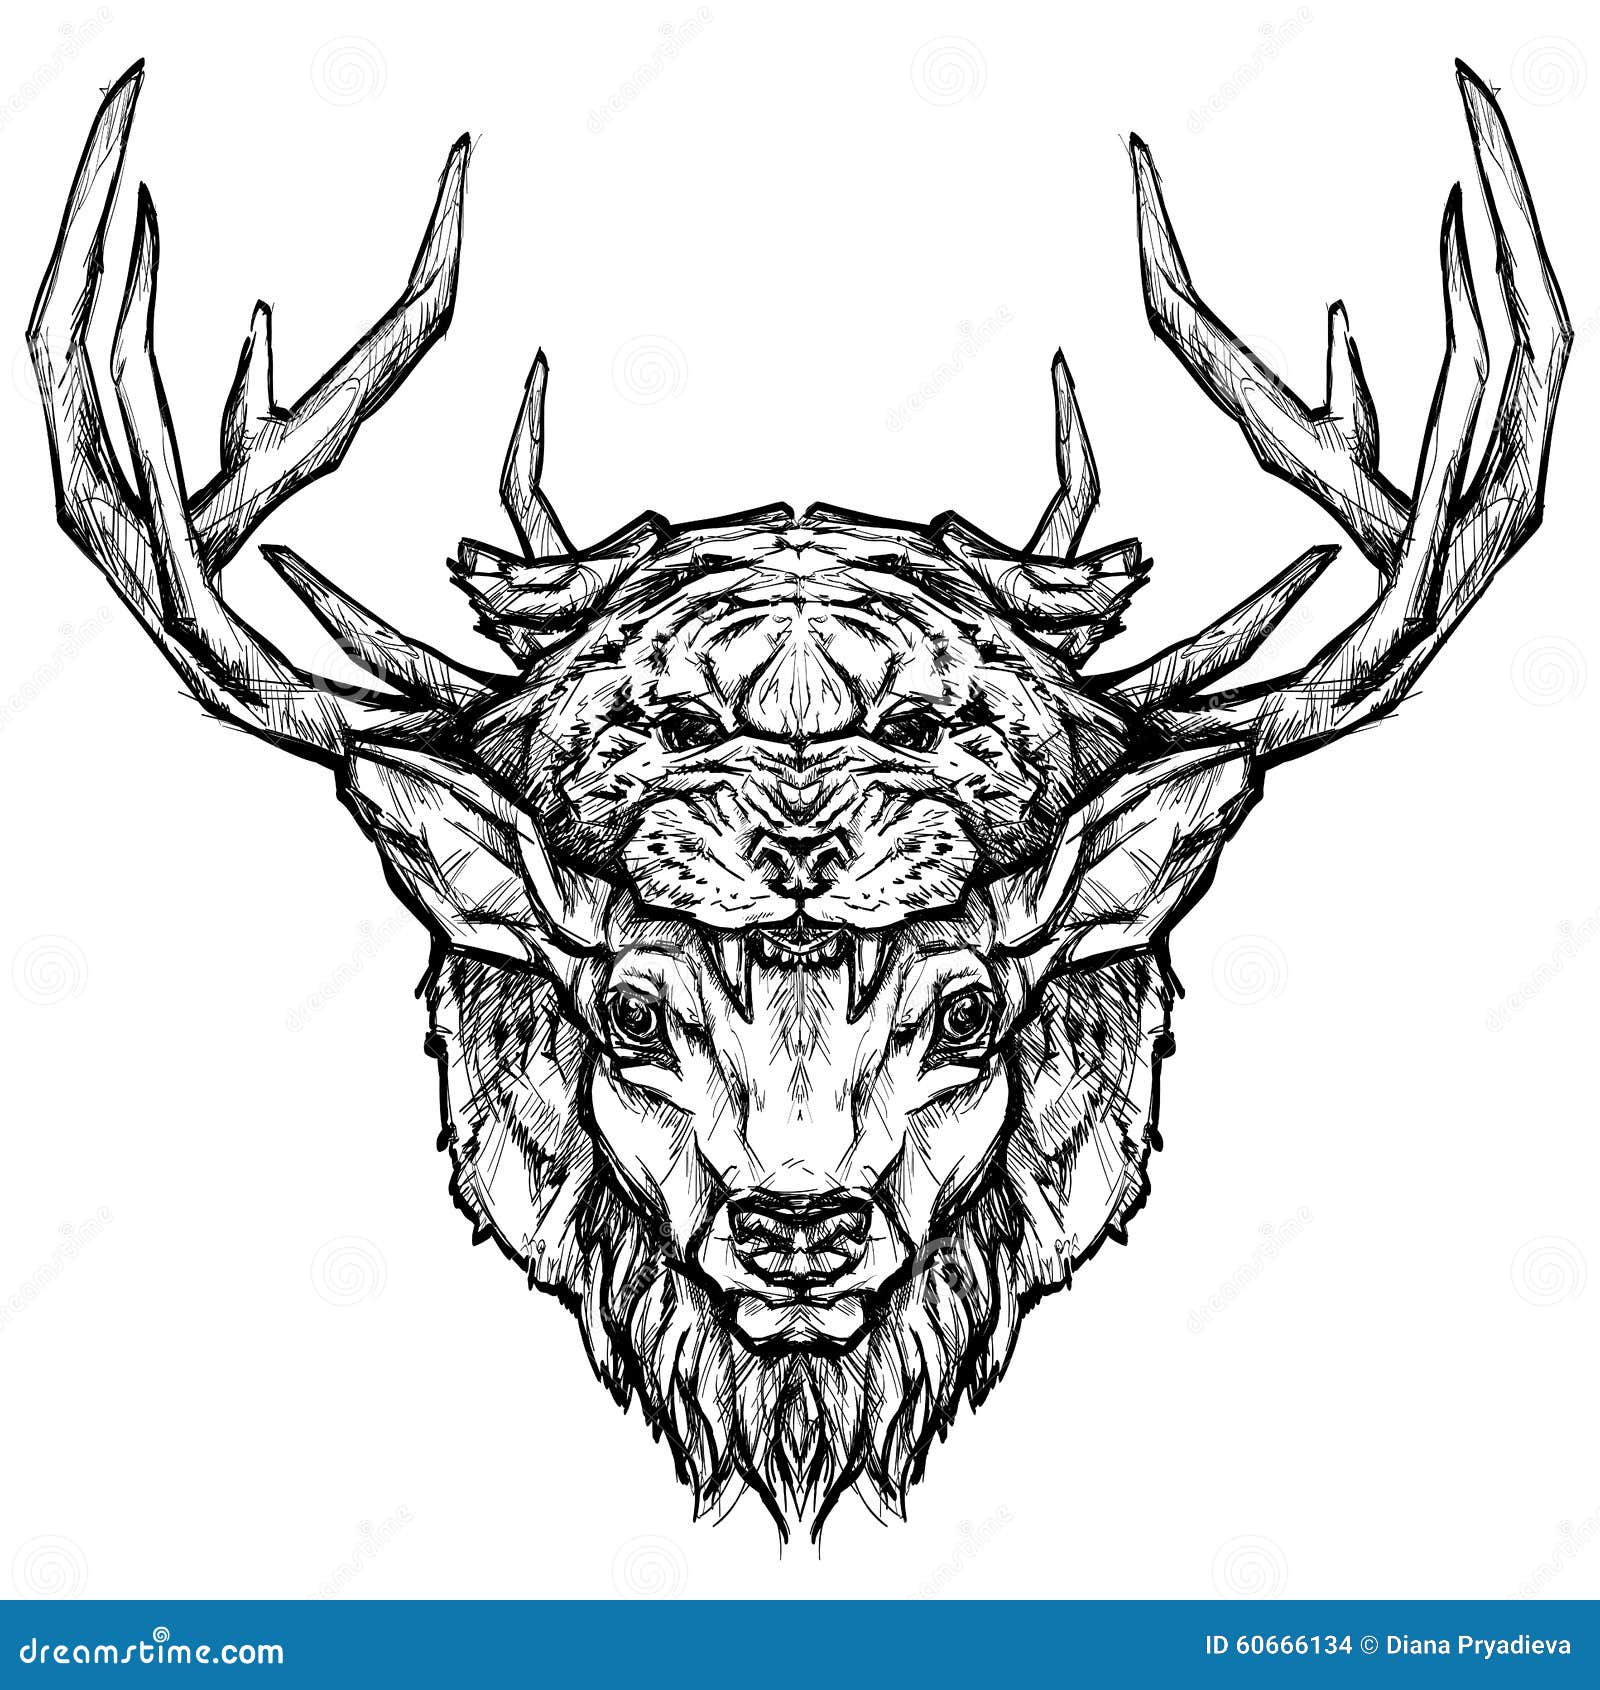 Black And White Deer Skull Tattoo Design